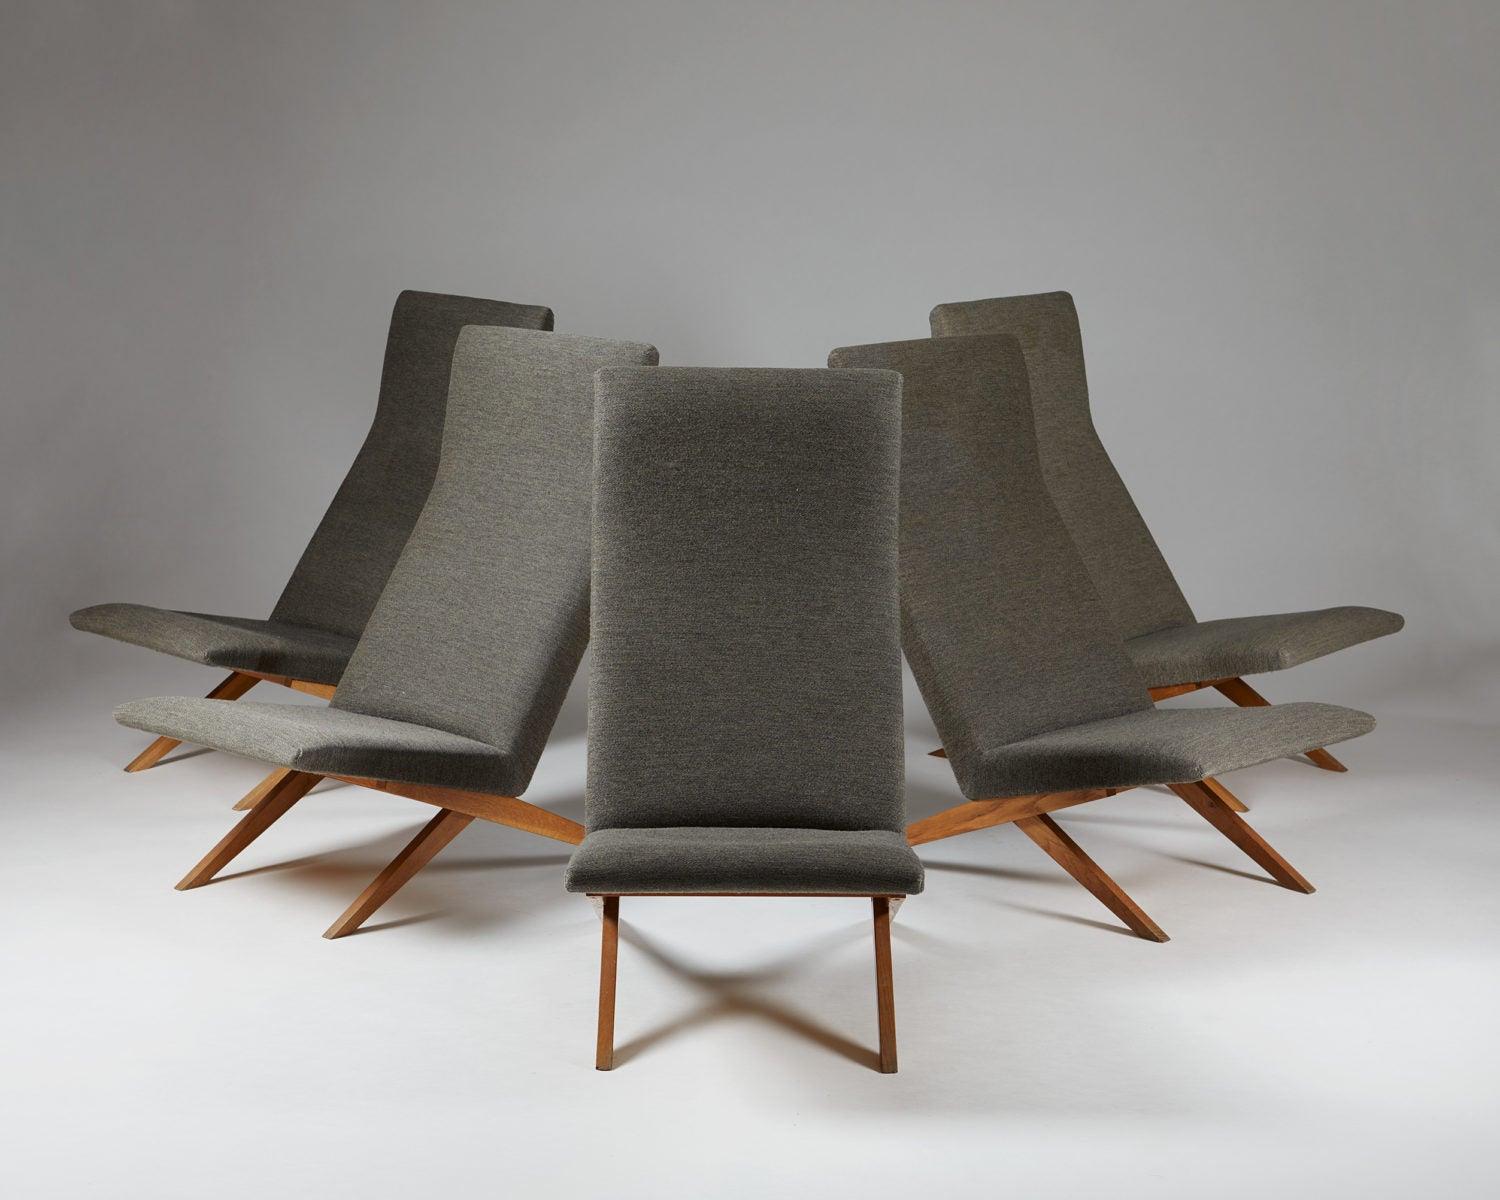 Ensemble de cinq fauteuils conçus par Bodil Kjaer pour Harbo Sølvsten,
Danemark, vers 1955.

H : 94,5 cm/ 3' 1